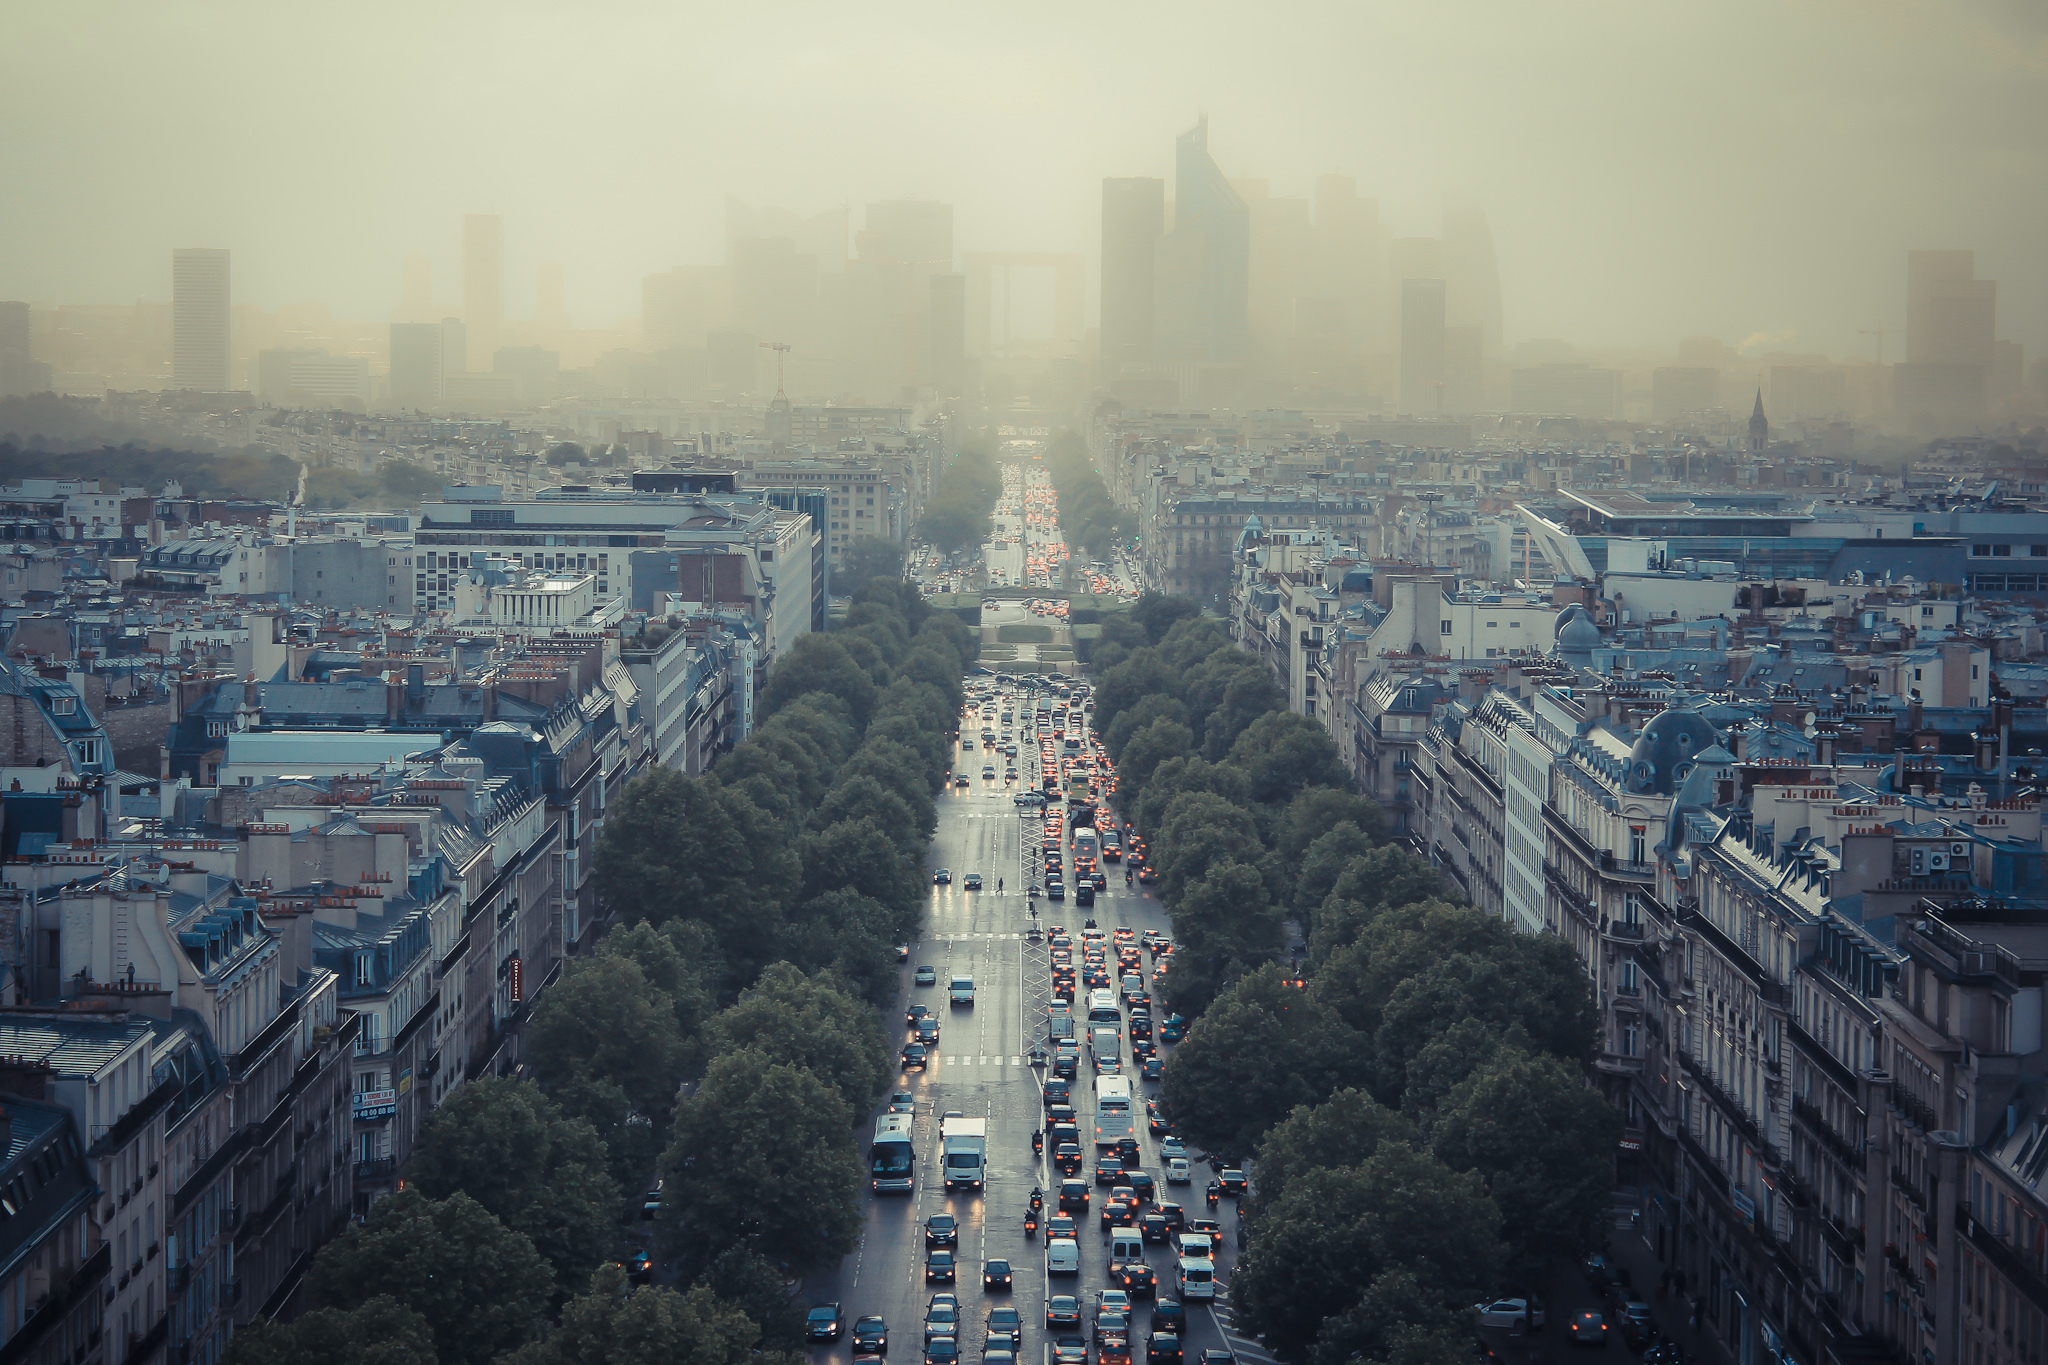 L'étude des composés organiques volatils (COV) en région parisienne est un enjeu de santé publique. Ici, le quartier de La Défense, au Nord-Ouest de Paris, dans un nuage de pollution. Crédits : Damián Bakarcic/Flickr.